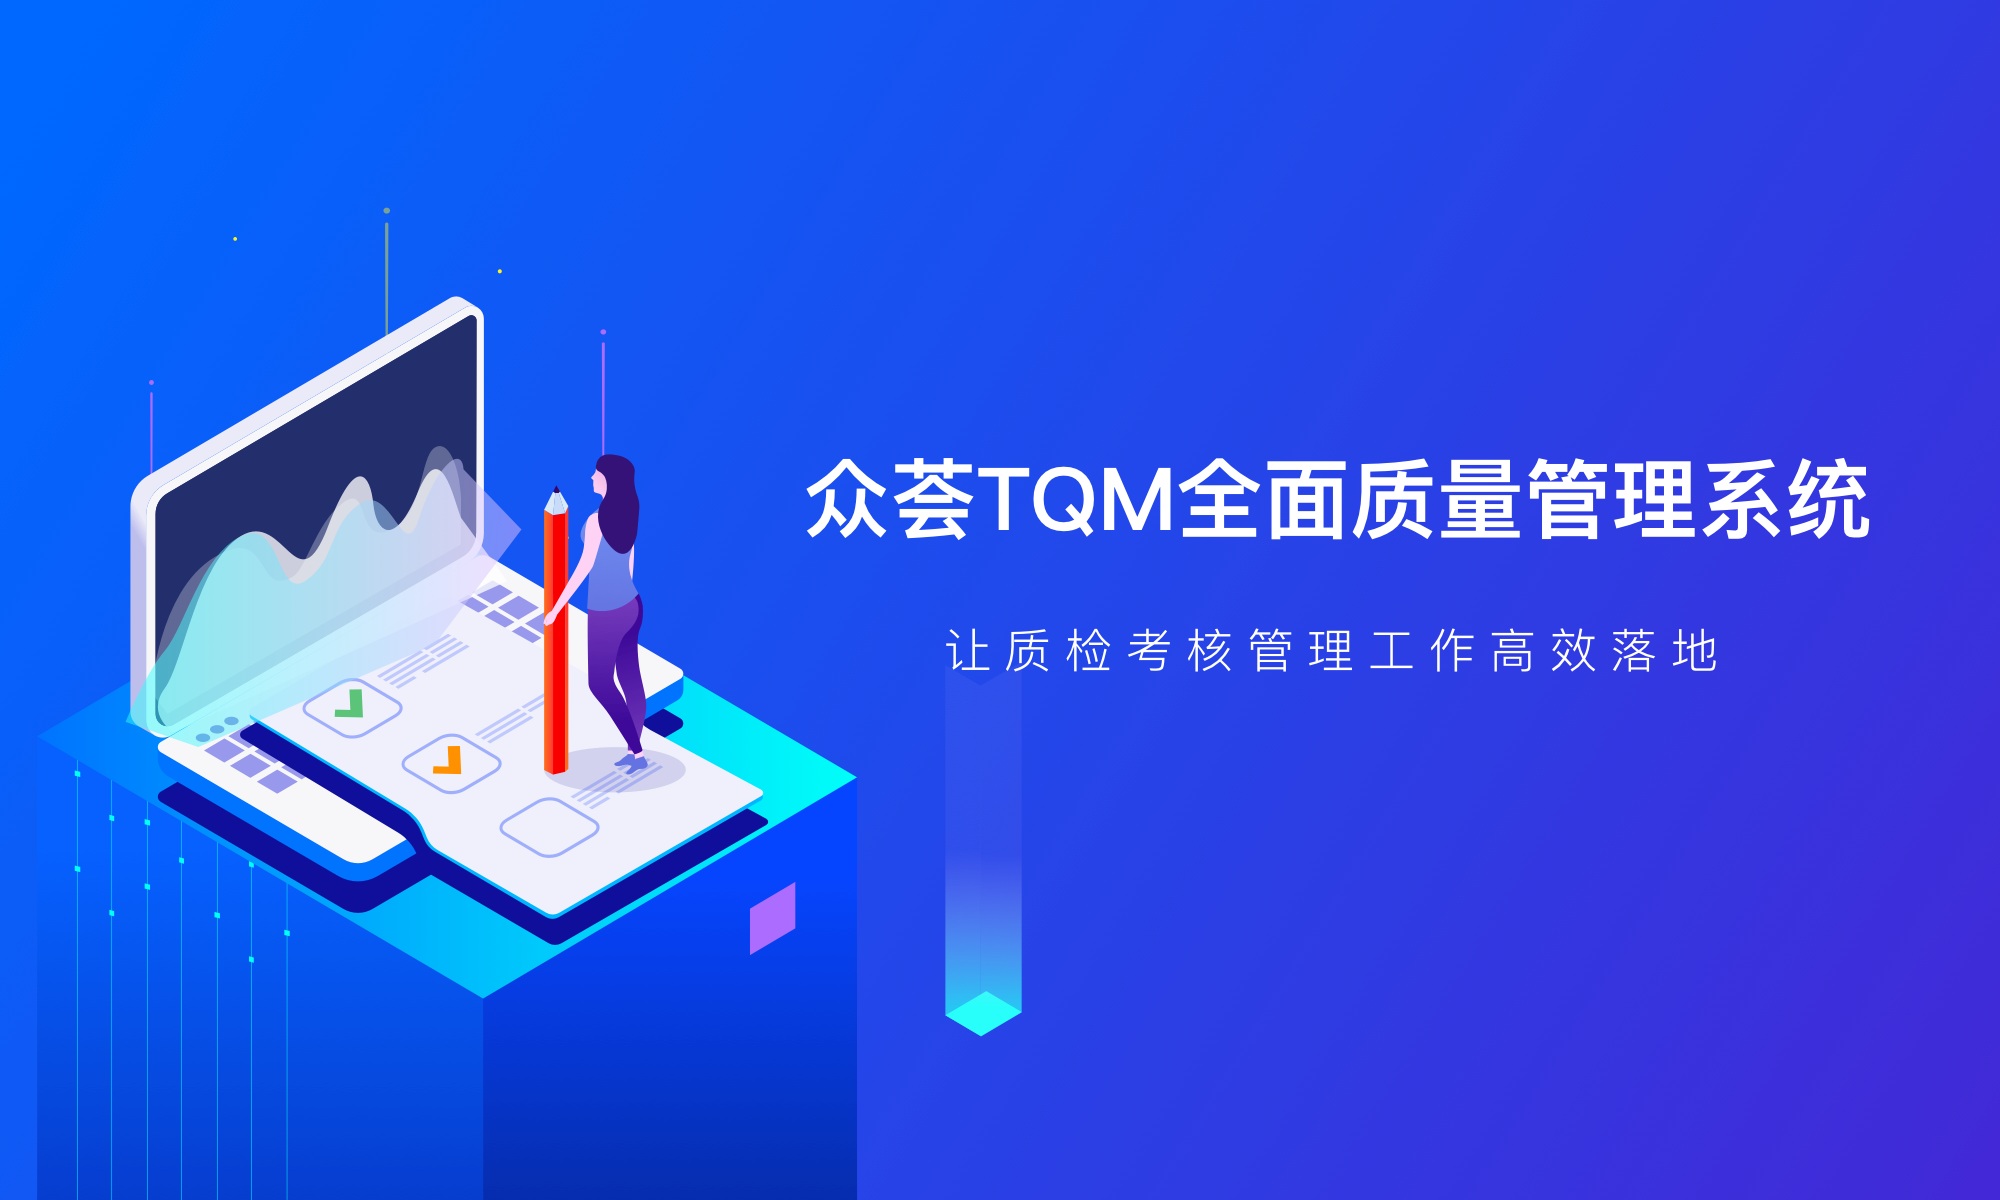 北京众荟信息技术股份有限公司 众荟TQM全面质量管理系统